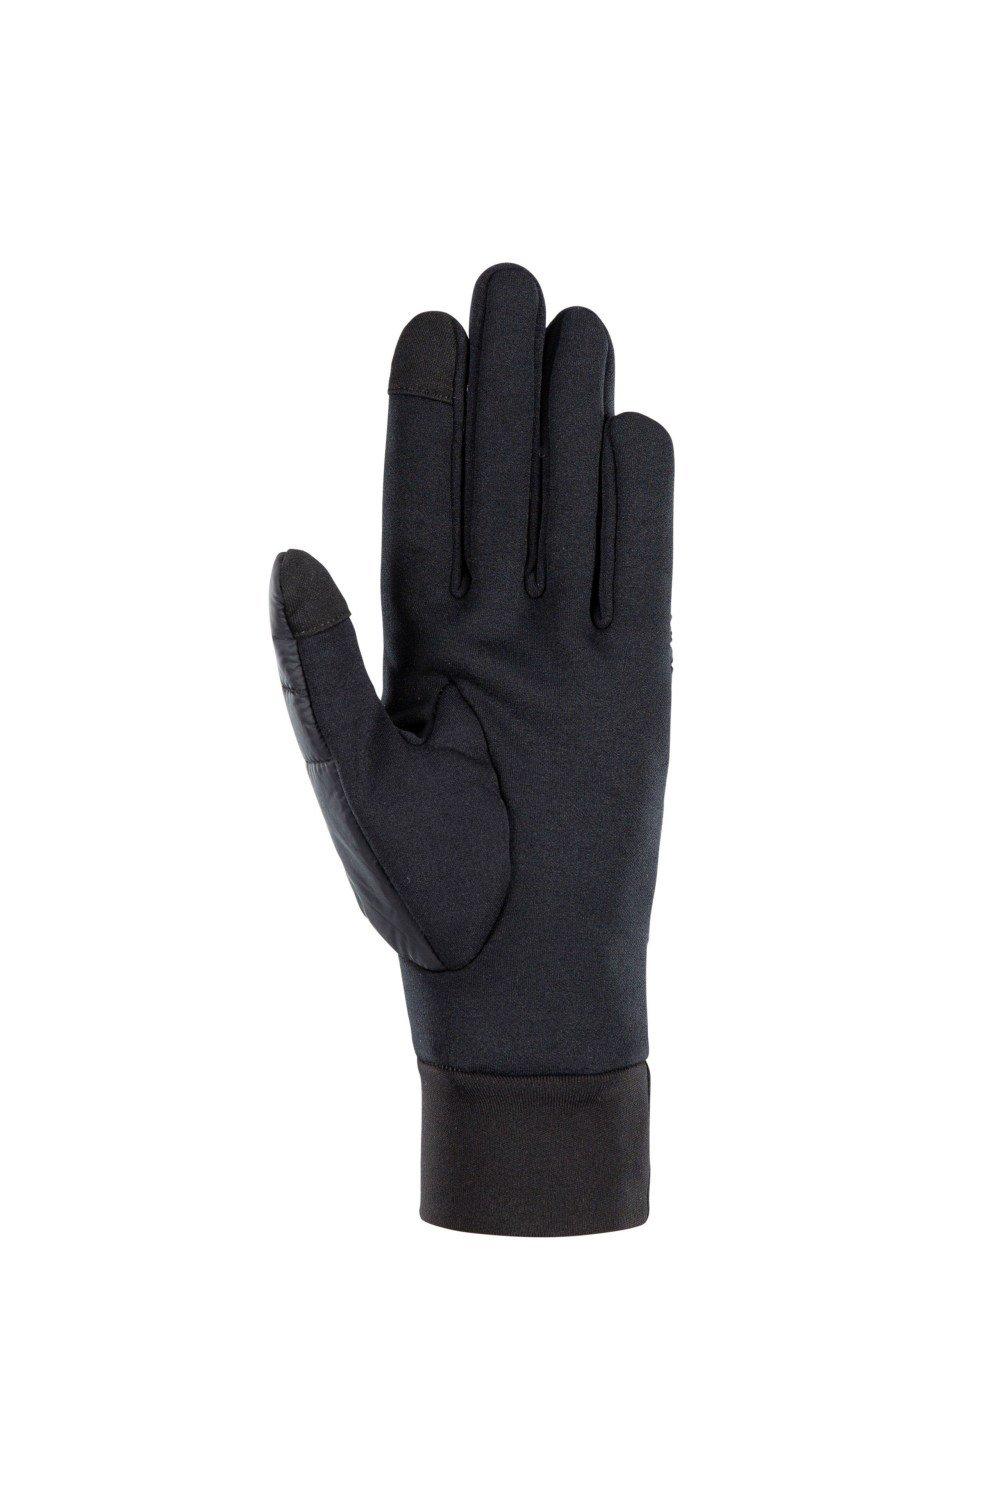 кожаная перчатка для водителя кожаная защитная перчатка из кожи оленя рабочая перчатка из кожи Кожаная перчатка Румер Trespass, черный